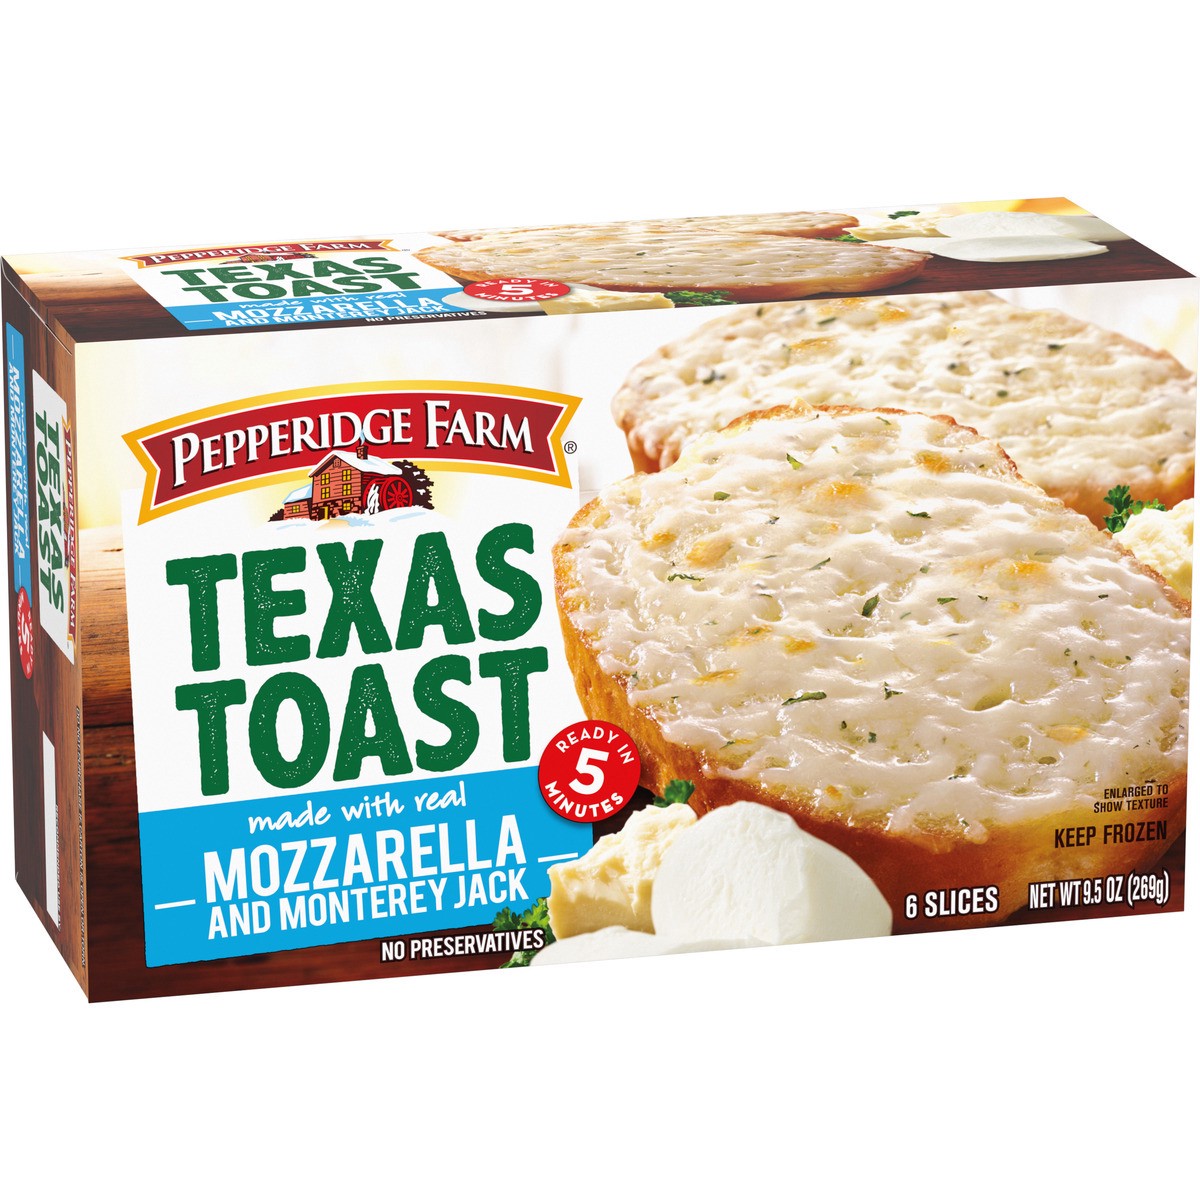 slide 2 of 9, Pepperidge Farm Texas Toast Frozen Mozzarella & Monterey Jack Bread, 6 Slices, 9.5 oz. Box, 9.5 oz